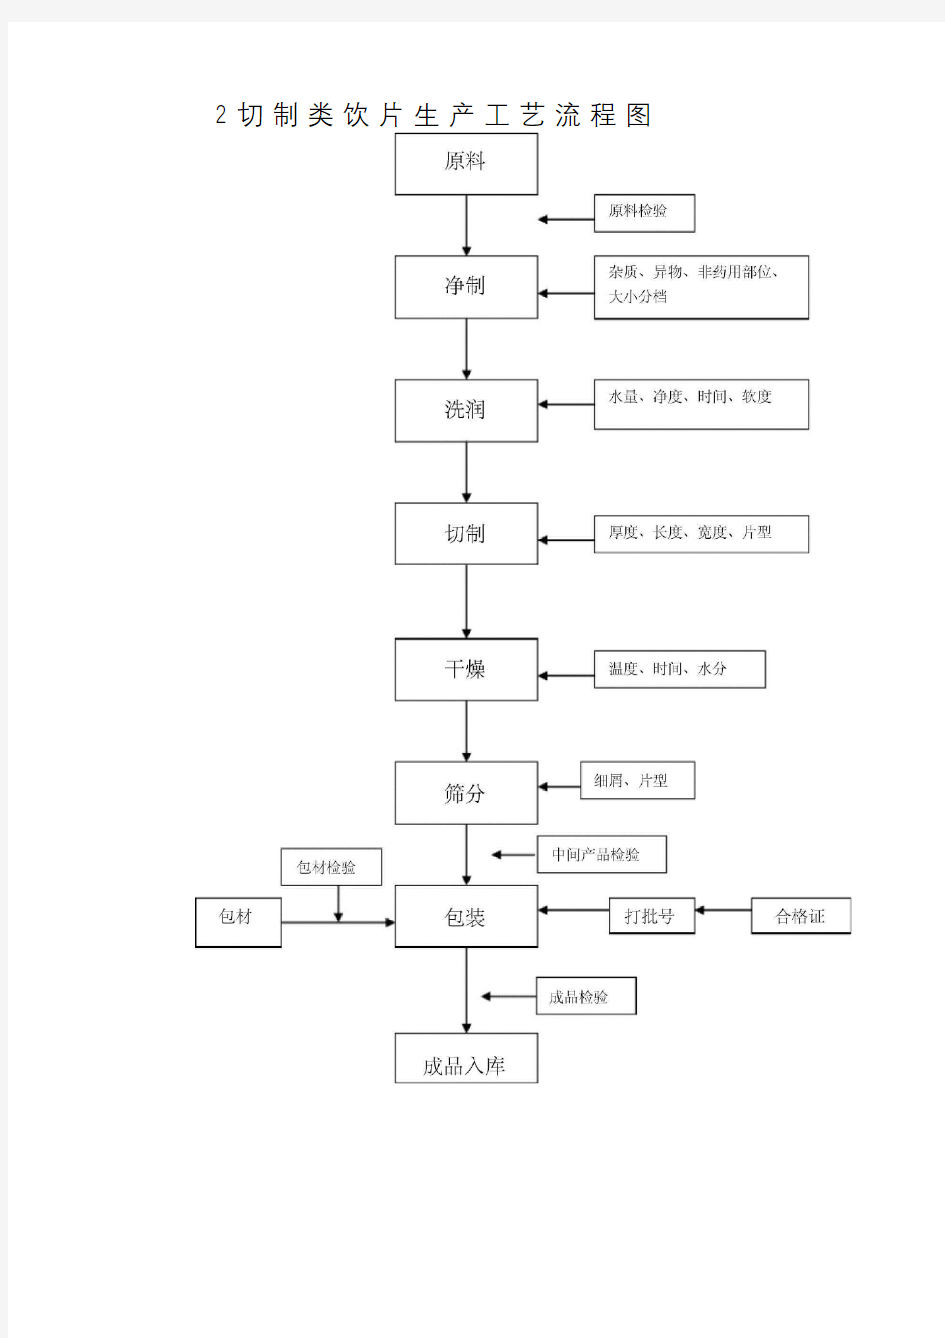 中药饮片加工工艺标准规范标准经过流程图(DEC)